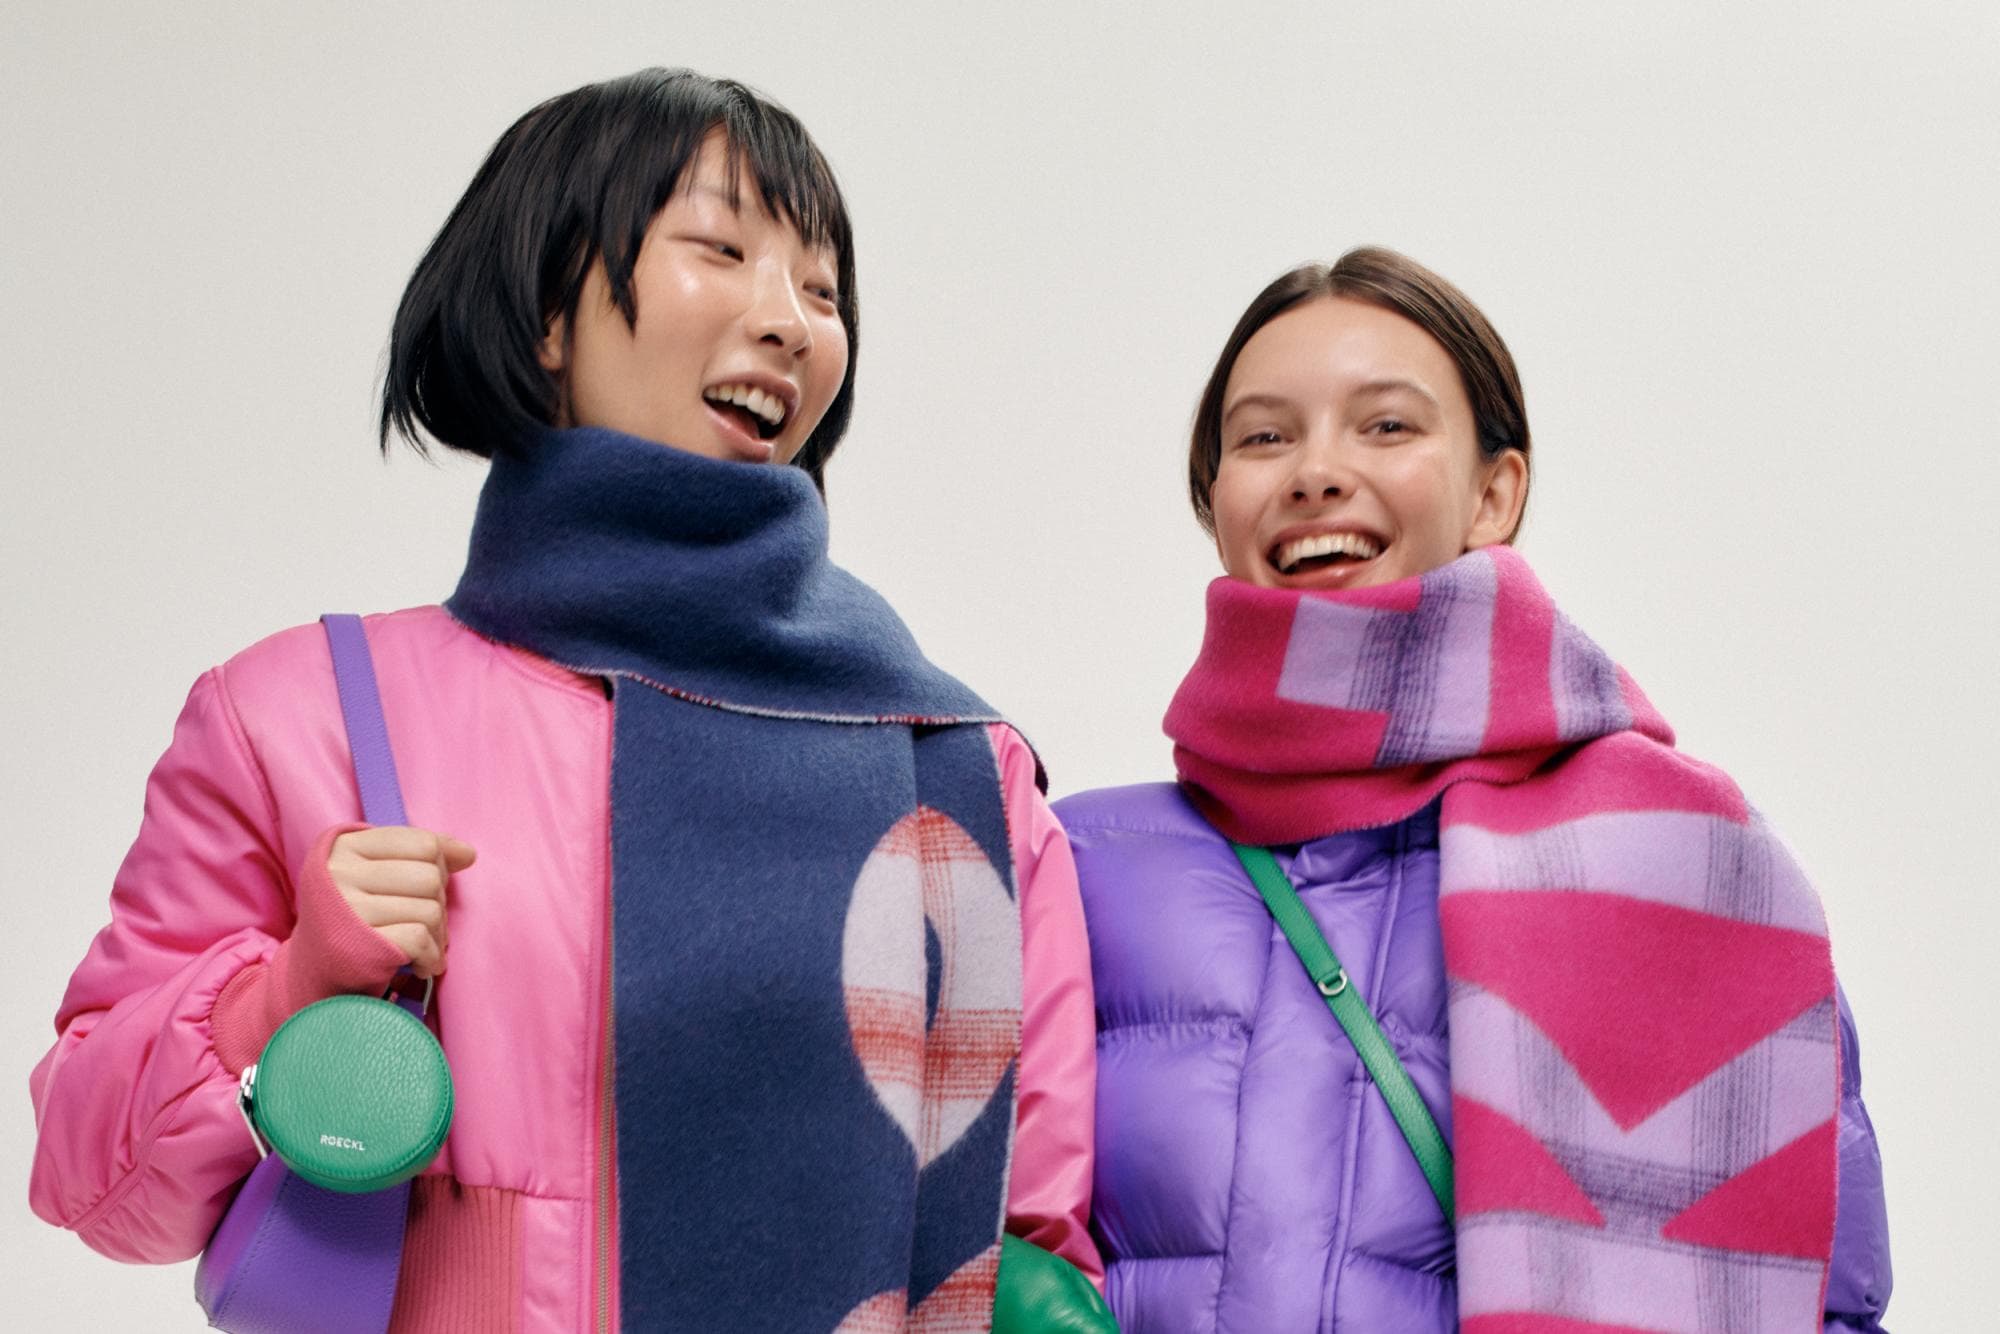 Der Schal Logo Check in blau oder pink bringt farbige Freude in den Winter.